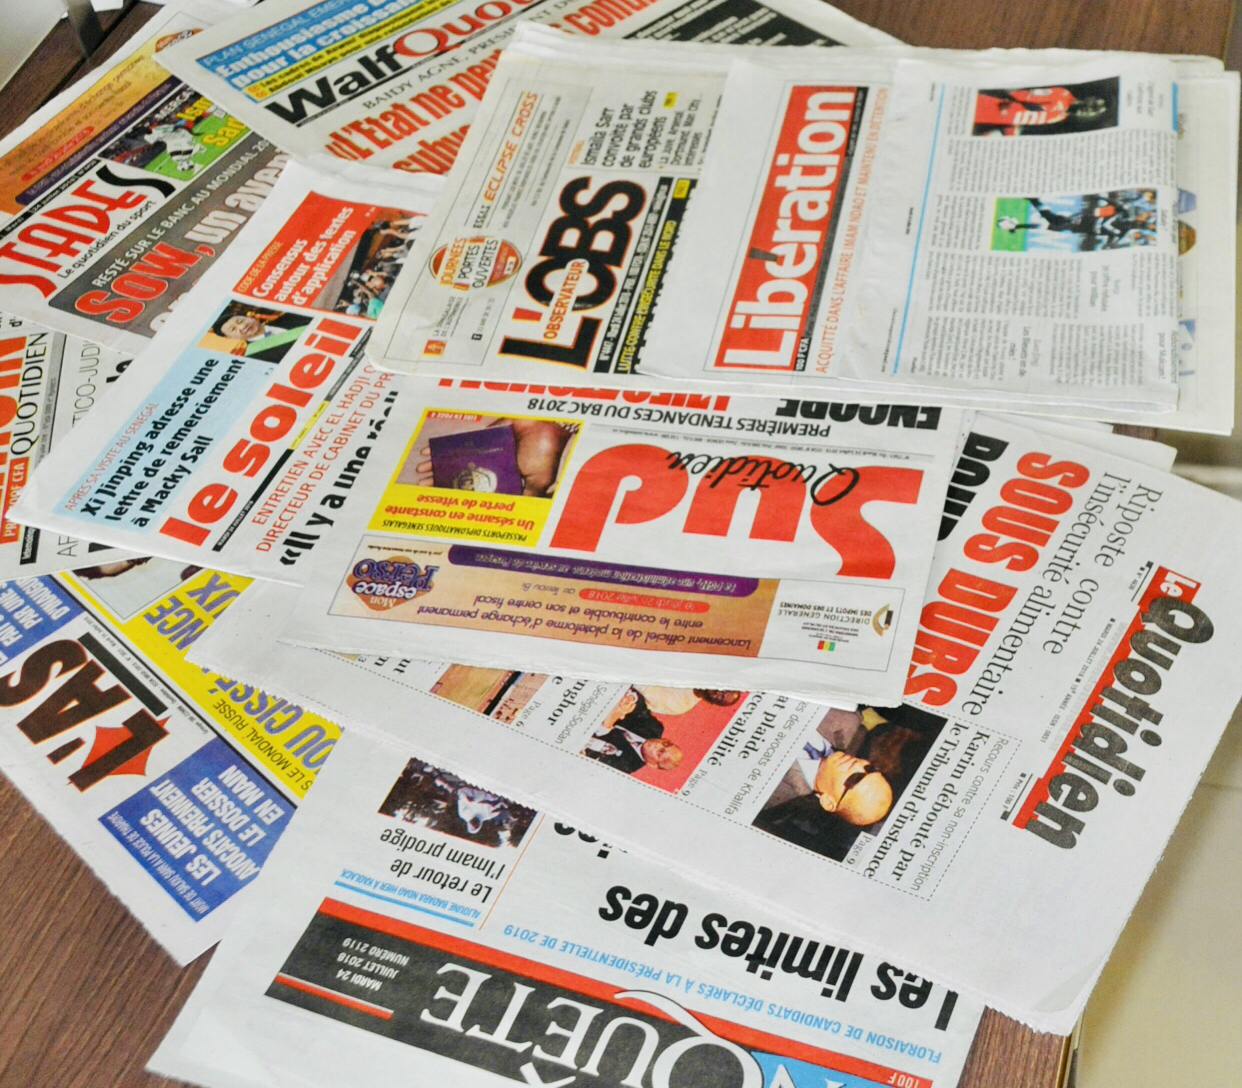 L’affaire Sonko, sujet dominant dans la presse sénégalaise